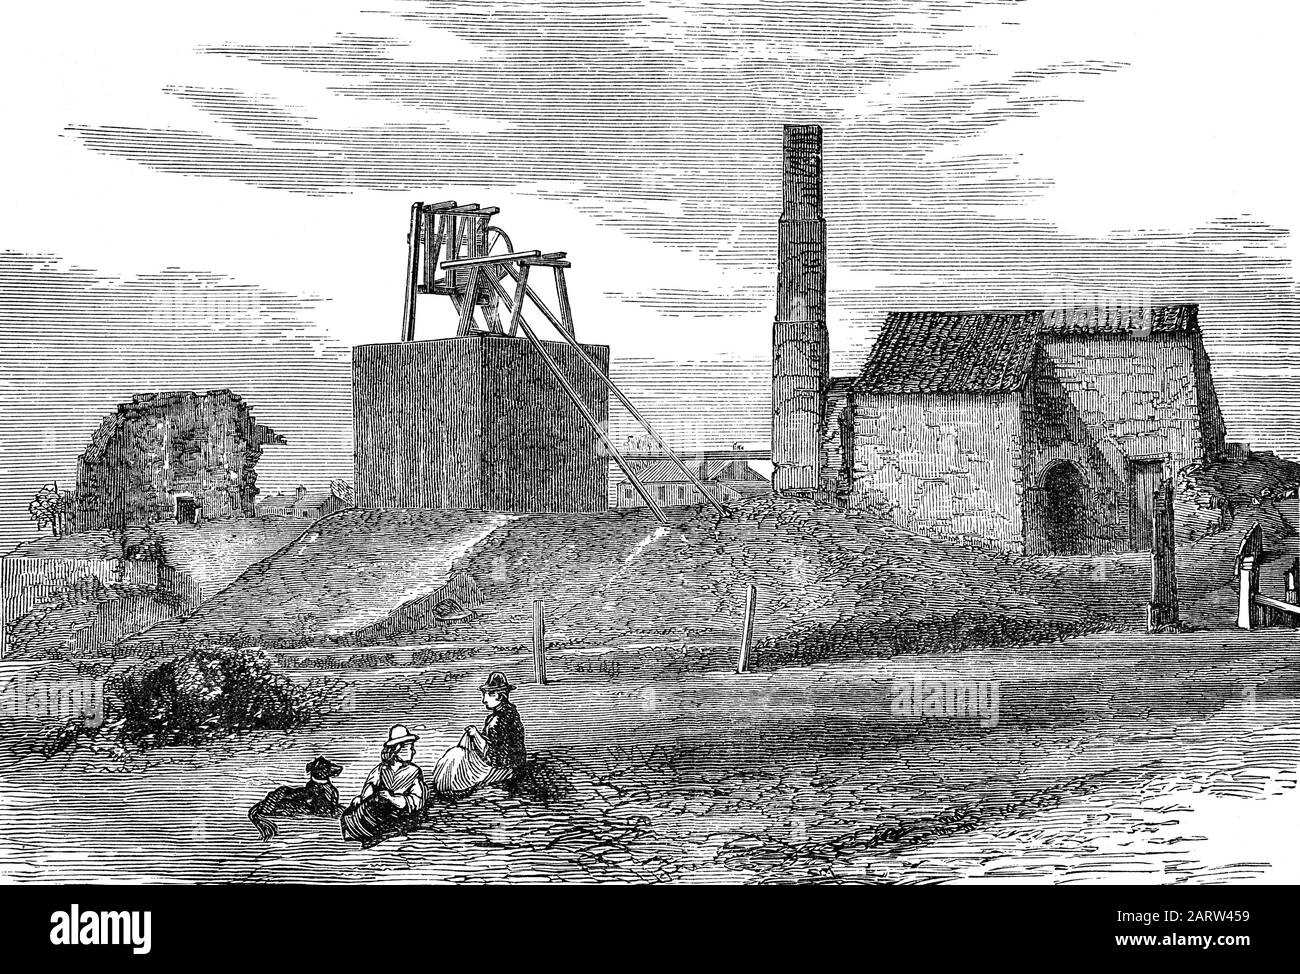 Killingworth High Pit aka Killingworth Colliery a Tyneside, Inghilterra del Nord, è dove, nel 1814 George Stephenson, enginewright alla collisione, ha costruito la sua prima locomotiva 'Blücher' con l'aiuto e l'incoraggiamento del suo manager, Nicholas Wood, nel laboratorio di collisione dietro la sua casa 'Dial Cottage' su Lime Road. Questa locomotiva poteva trasportare 30 tonnellate di carbone su una collina ed è stata usata per trainare carri di carbone lungo la wagonway da Killingworth alle staithes Wallsend carbone. Anche se Blücher non ha sopravvivere a lungo, ha fornito a Stephenson la conoscenza e l'esperienza per costruire locomotive migliori. Foto Stock